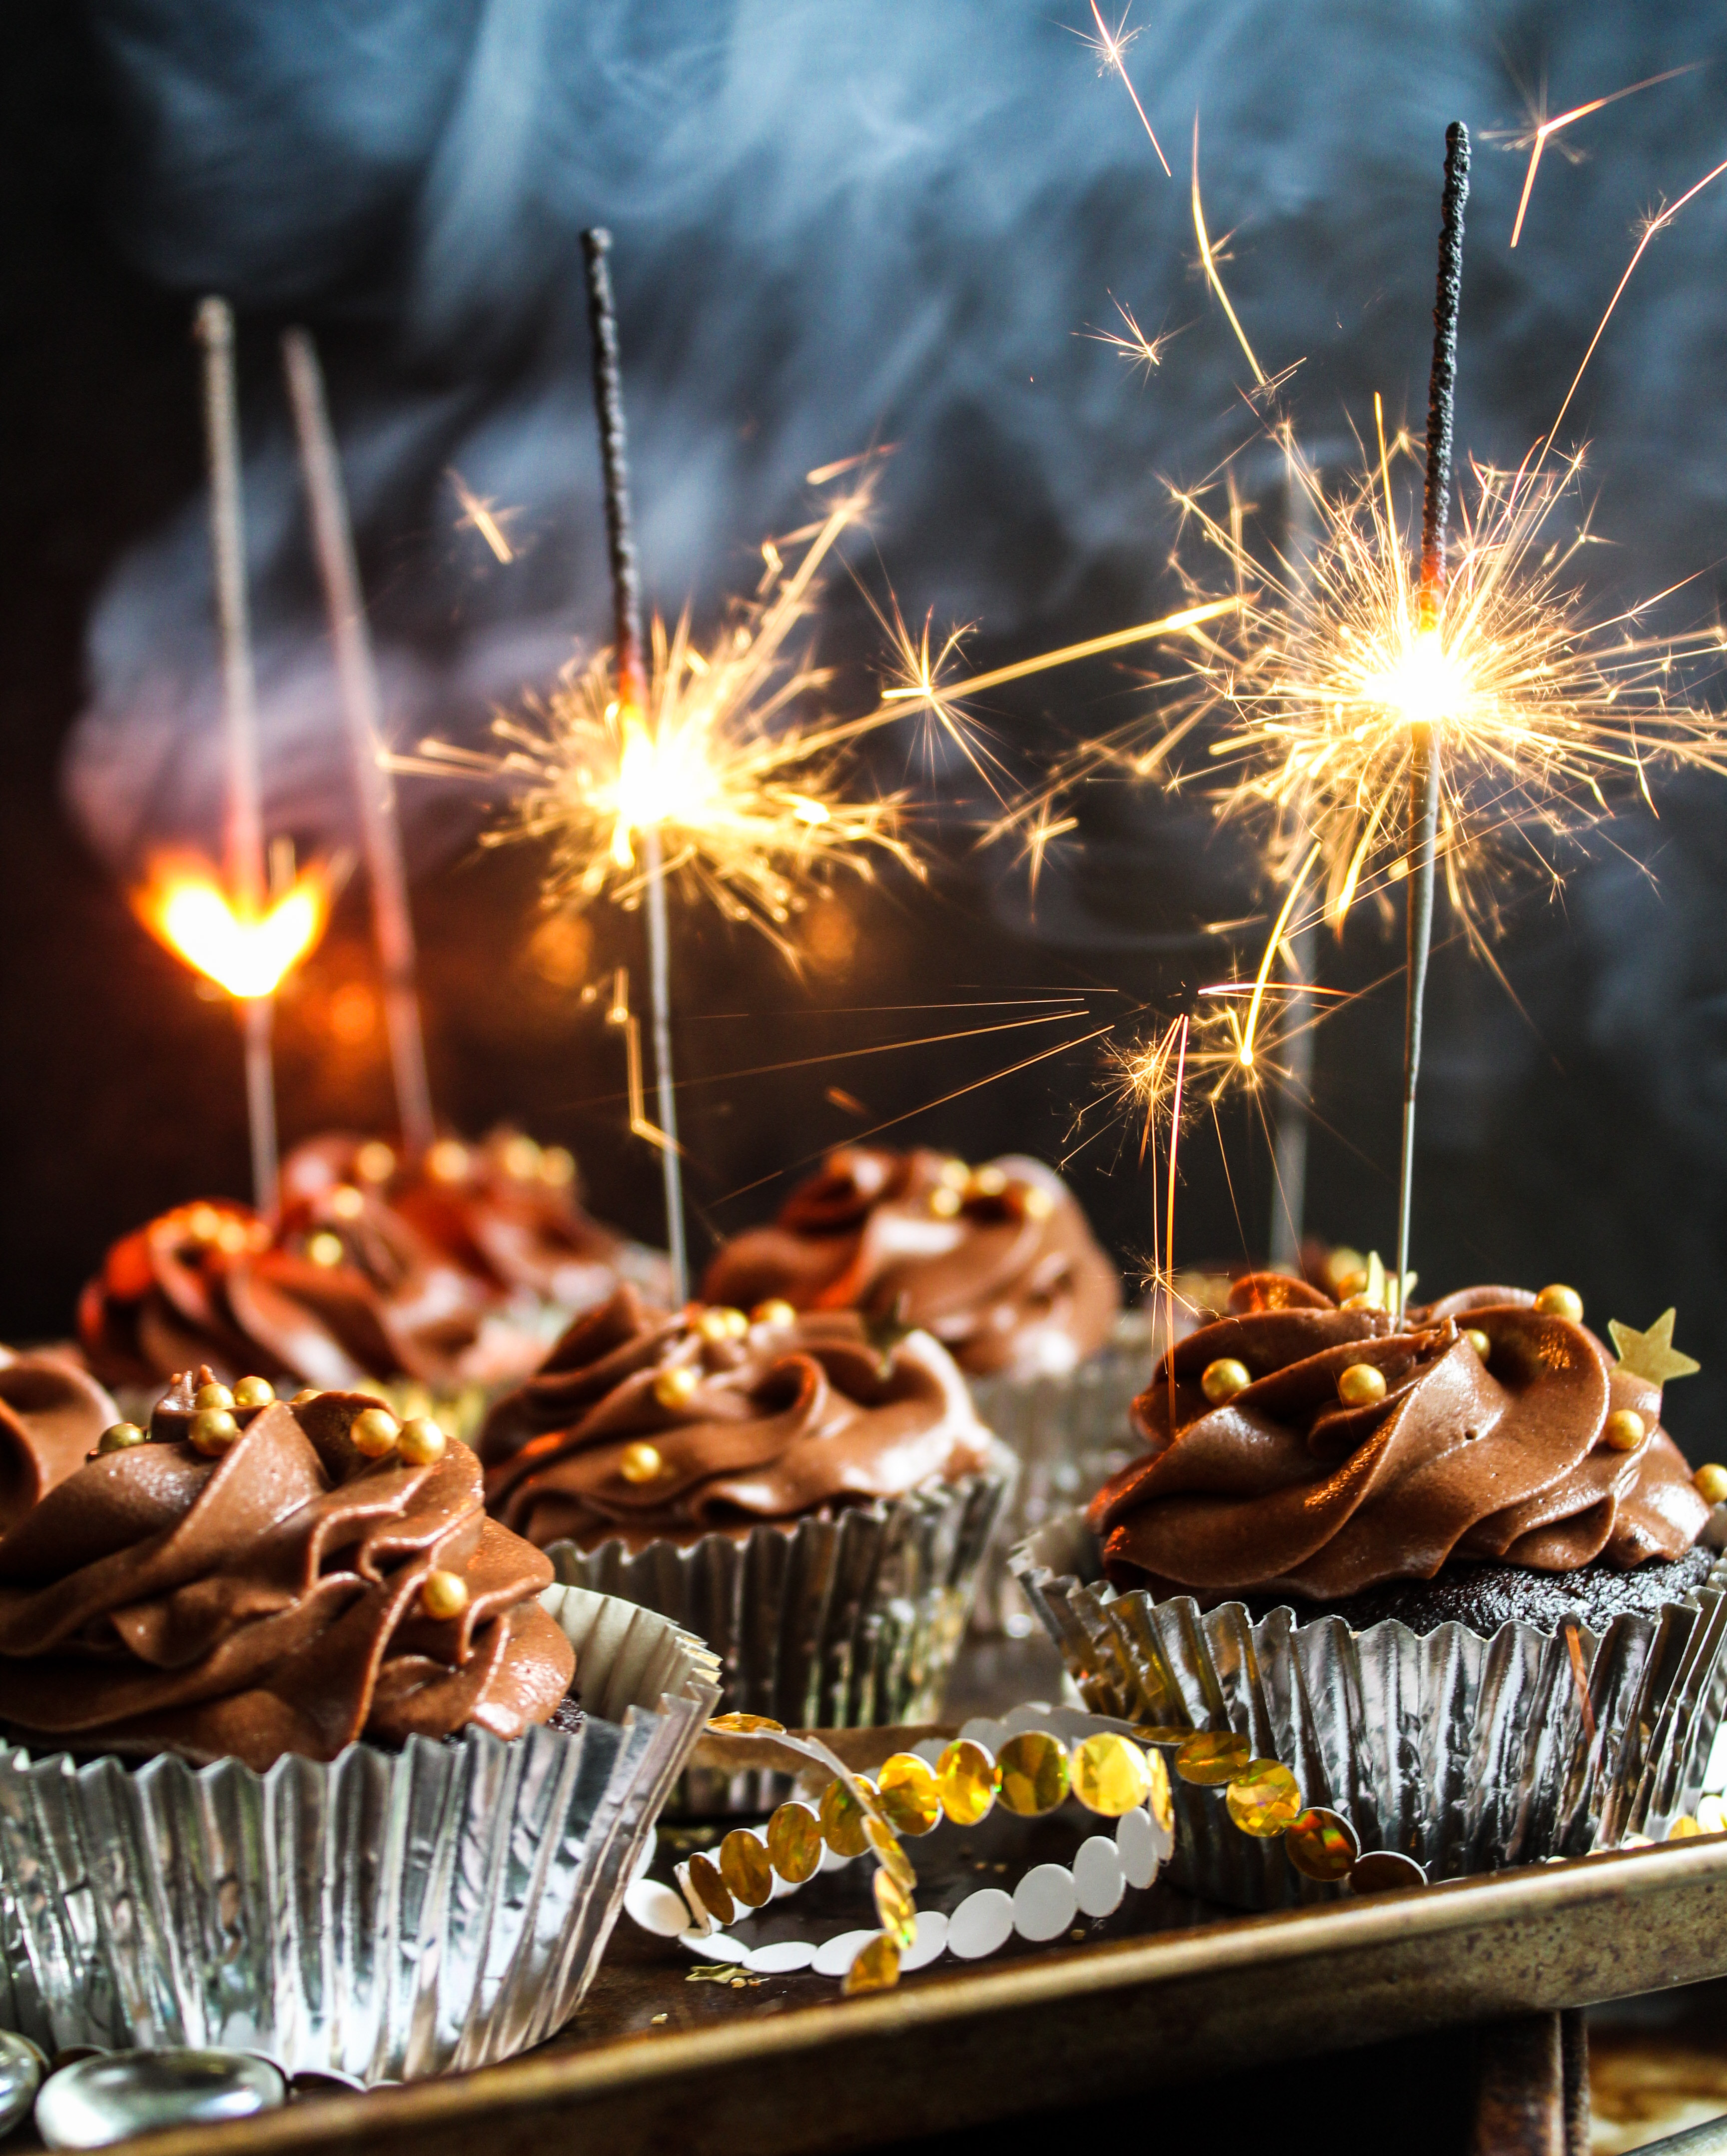 Sparkling Chocolate Cupcakes by Renee Simeon